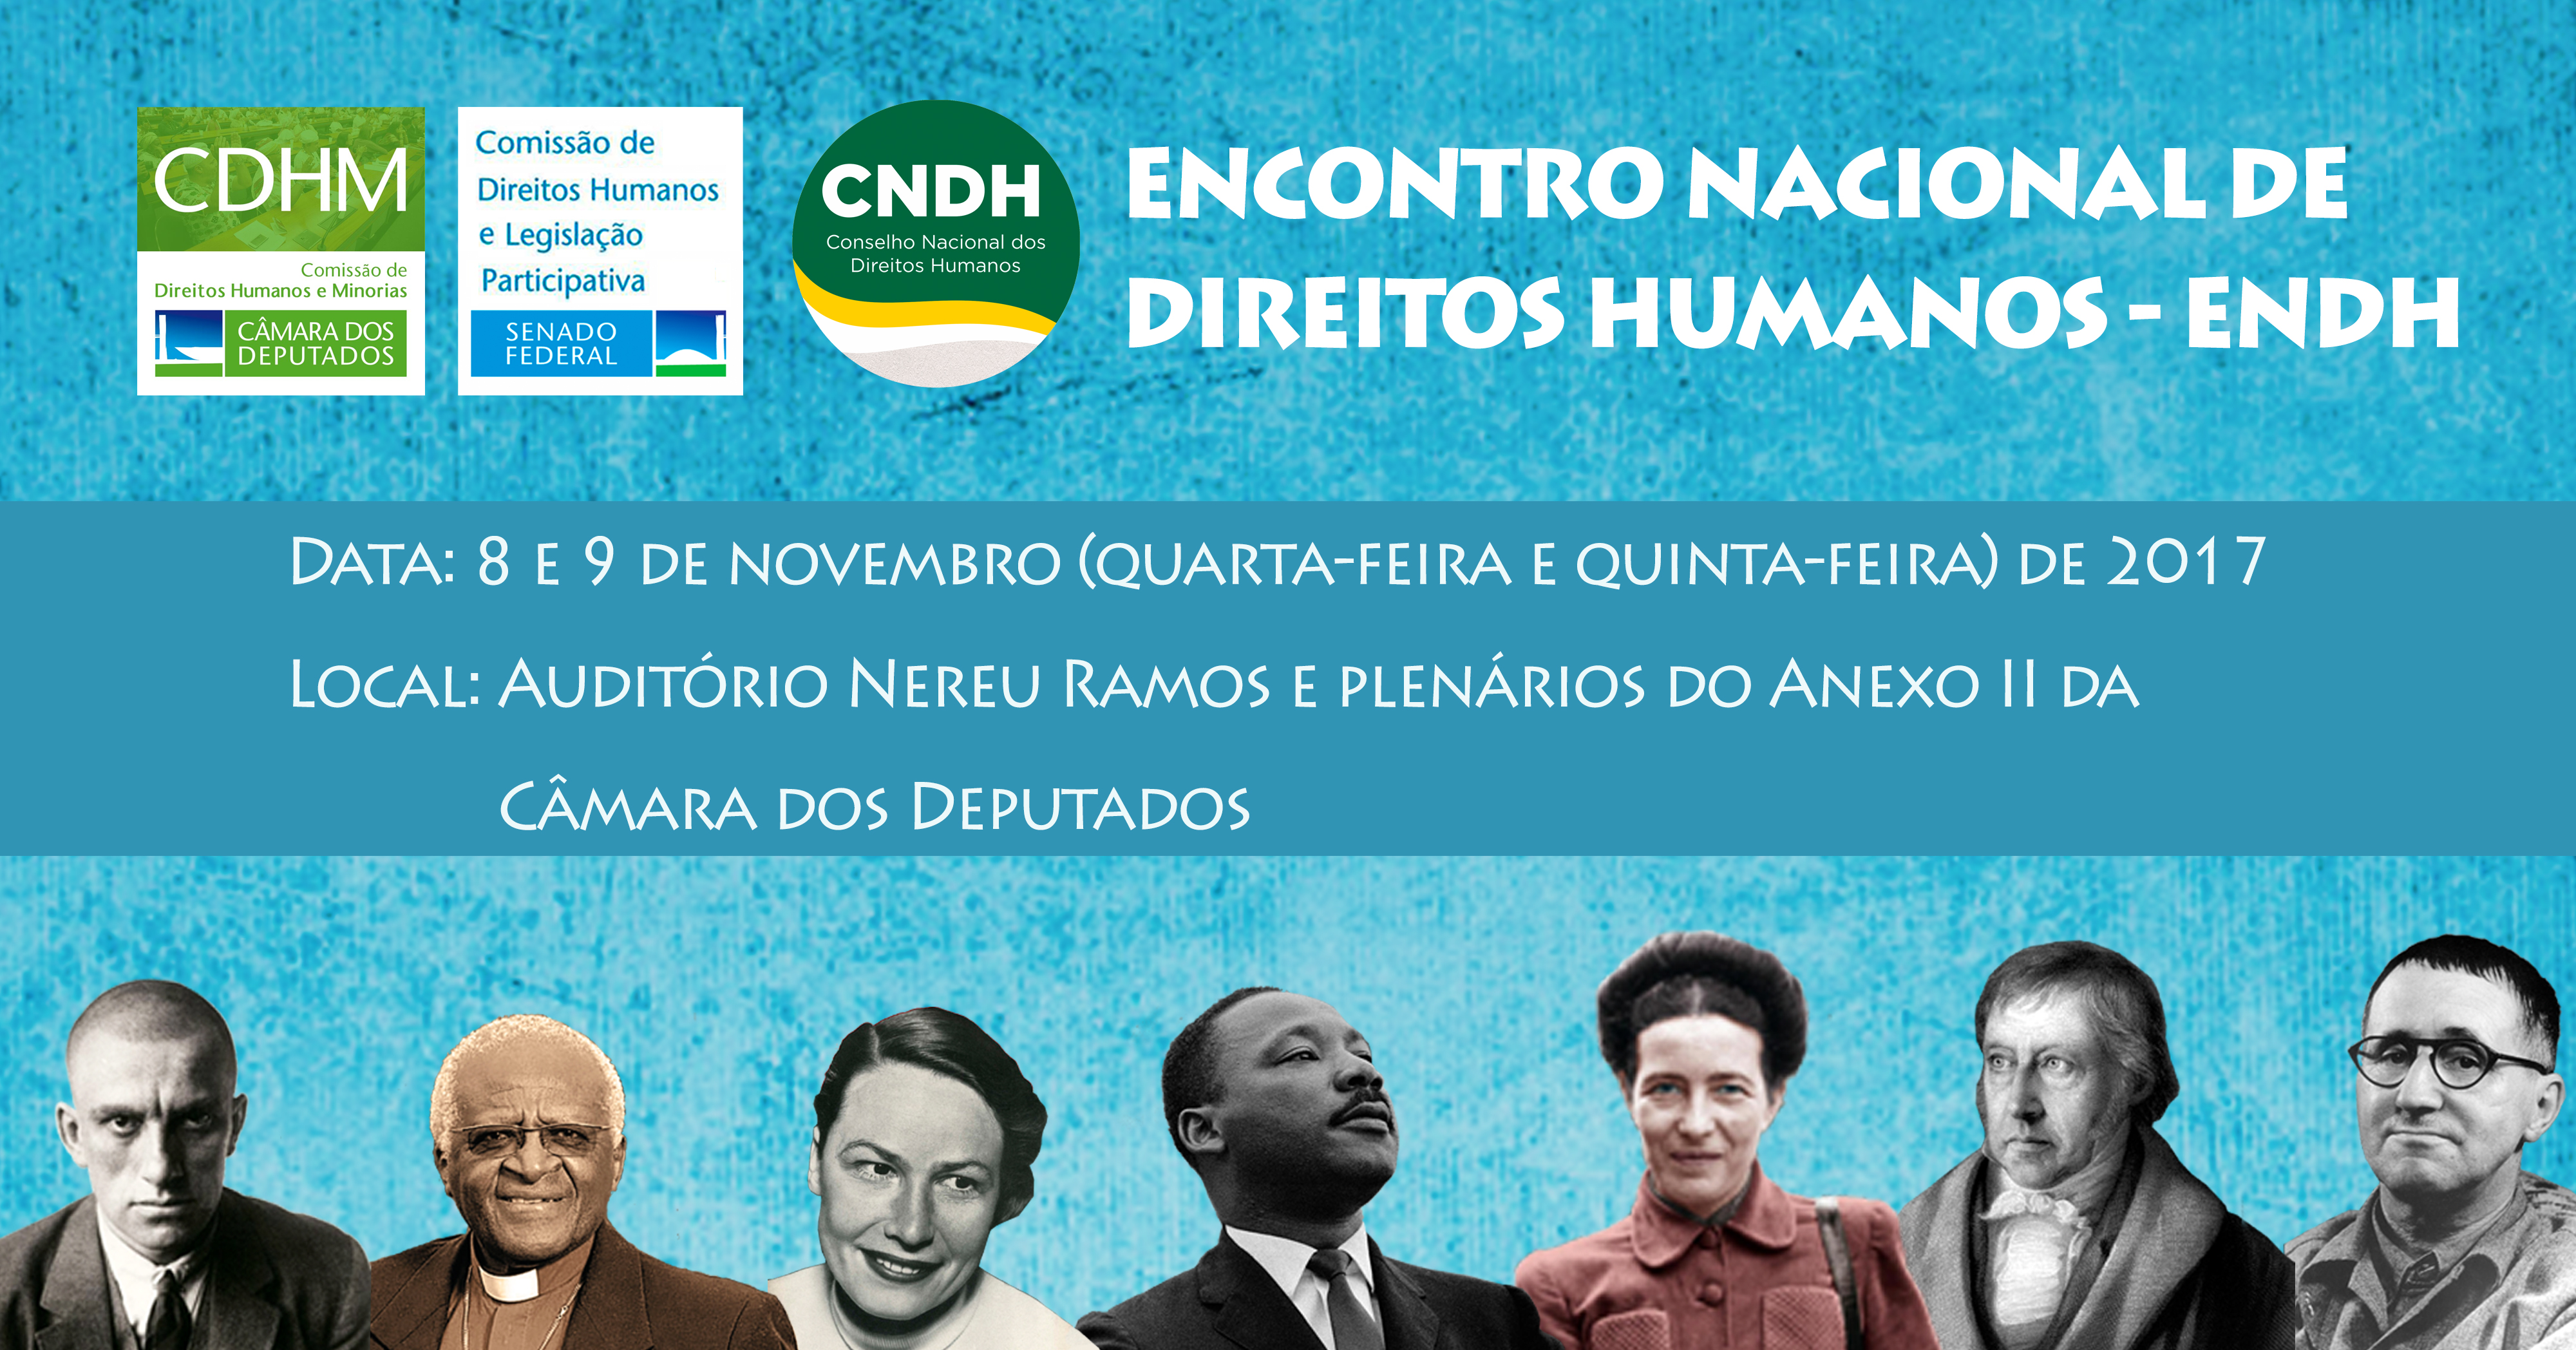 Encontro Nacional de Direitos Humanos - Construir juntos uma agenda democrática para os direitos humanos